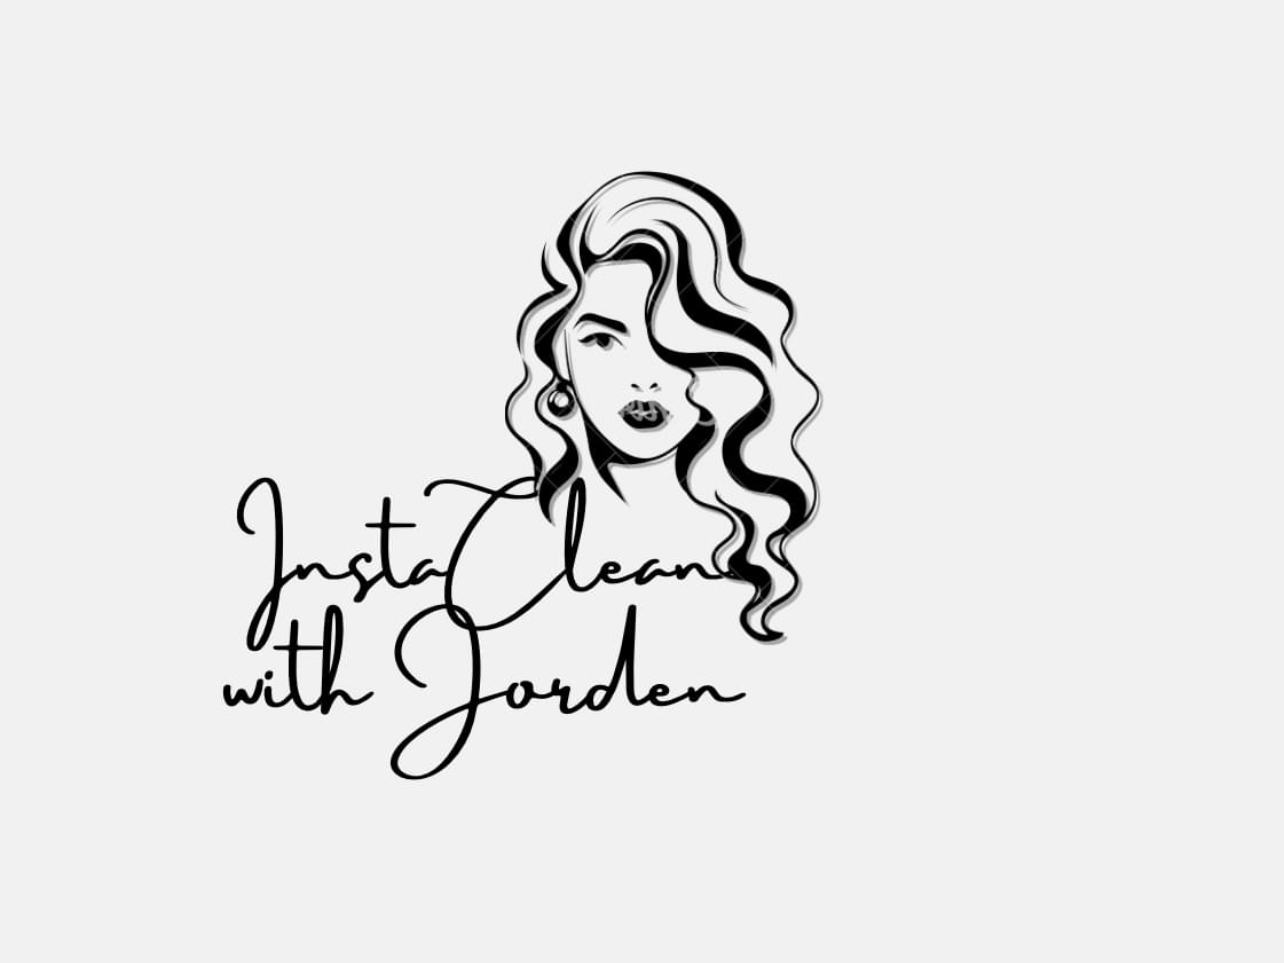 InstaClean with Jorden LLC Logo